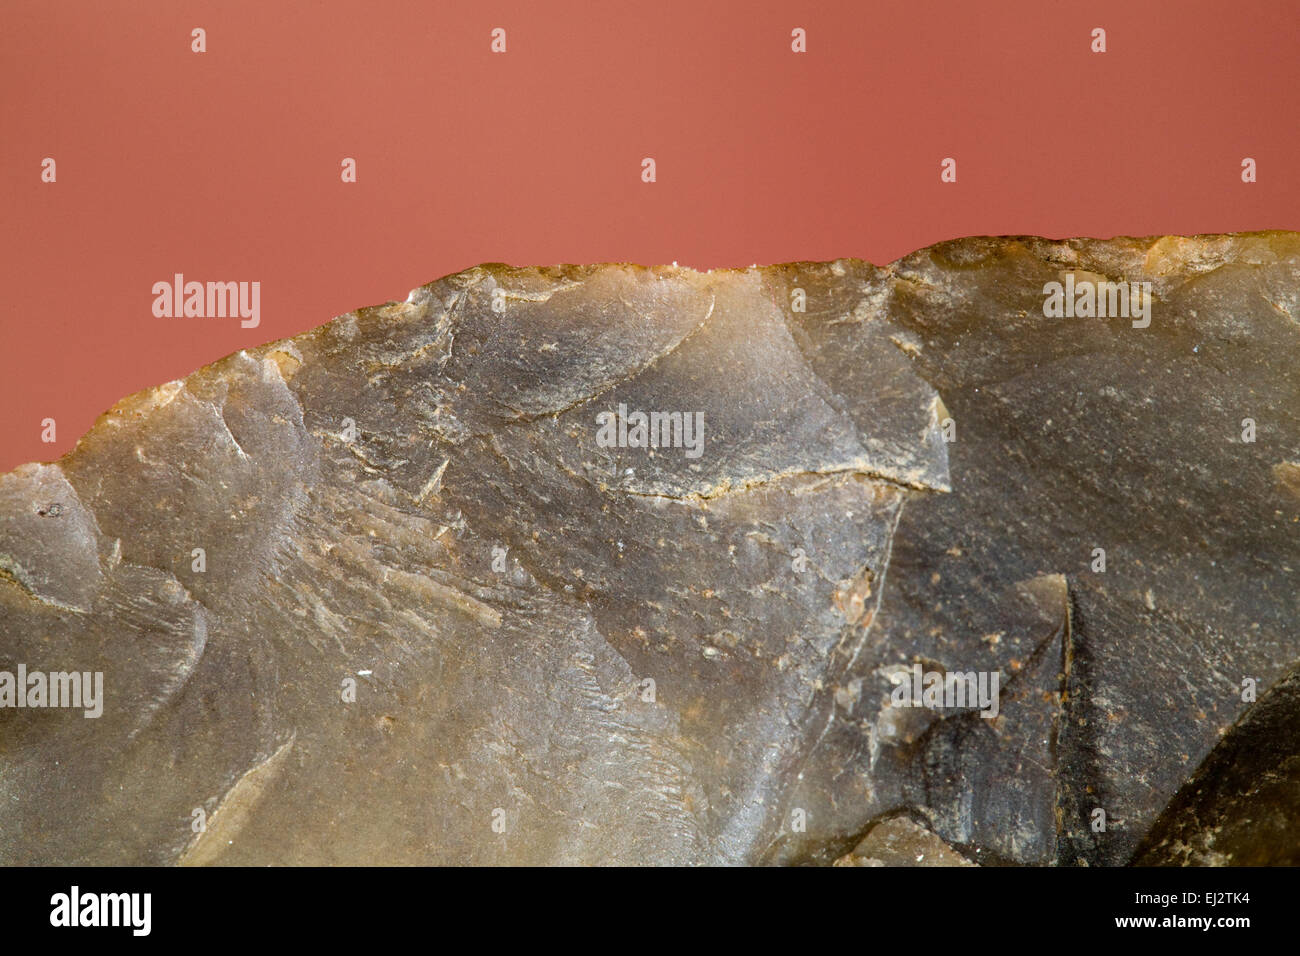 El borde afilado de una trabajada a mano (knapped) Herramienta de piedra de sílex o cuarzo por indios prehistóricos del desierto arcaico P Foto de stock